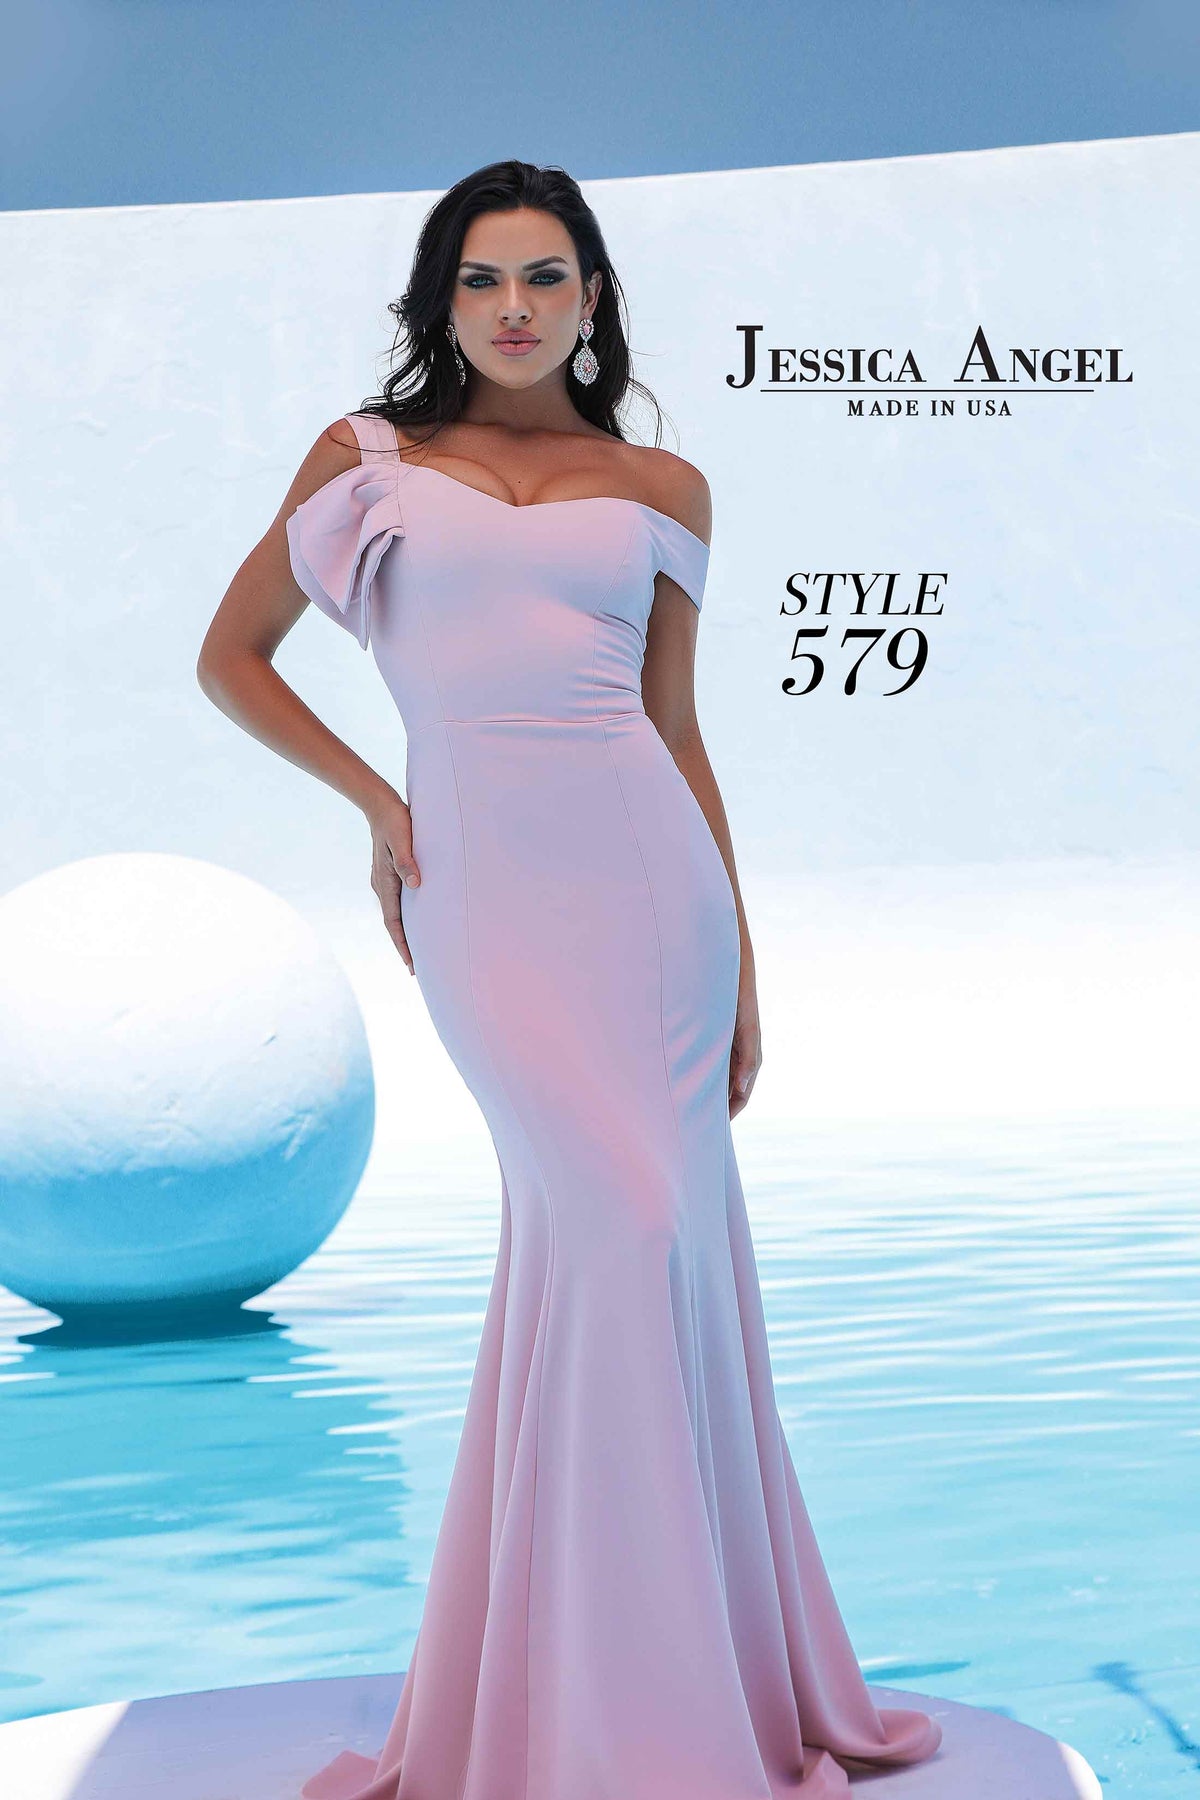 Jessica Angel 579